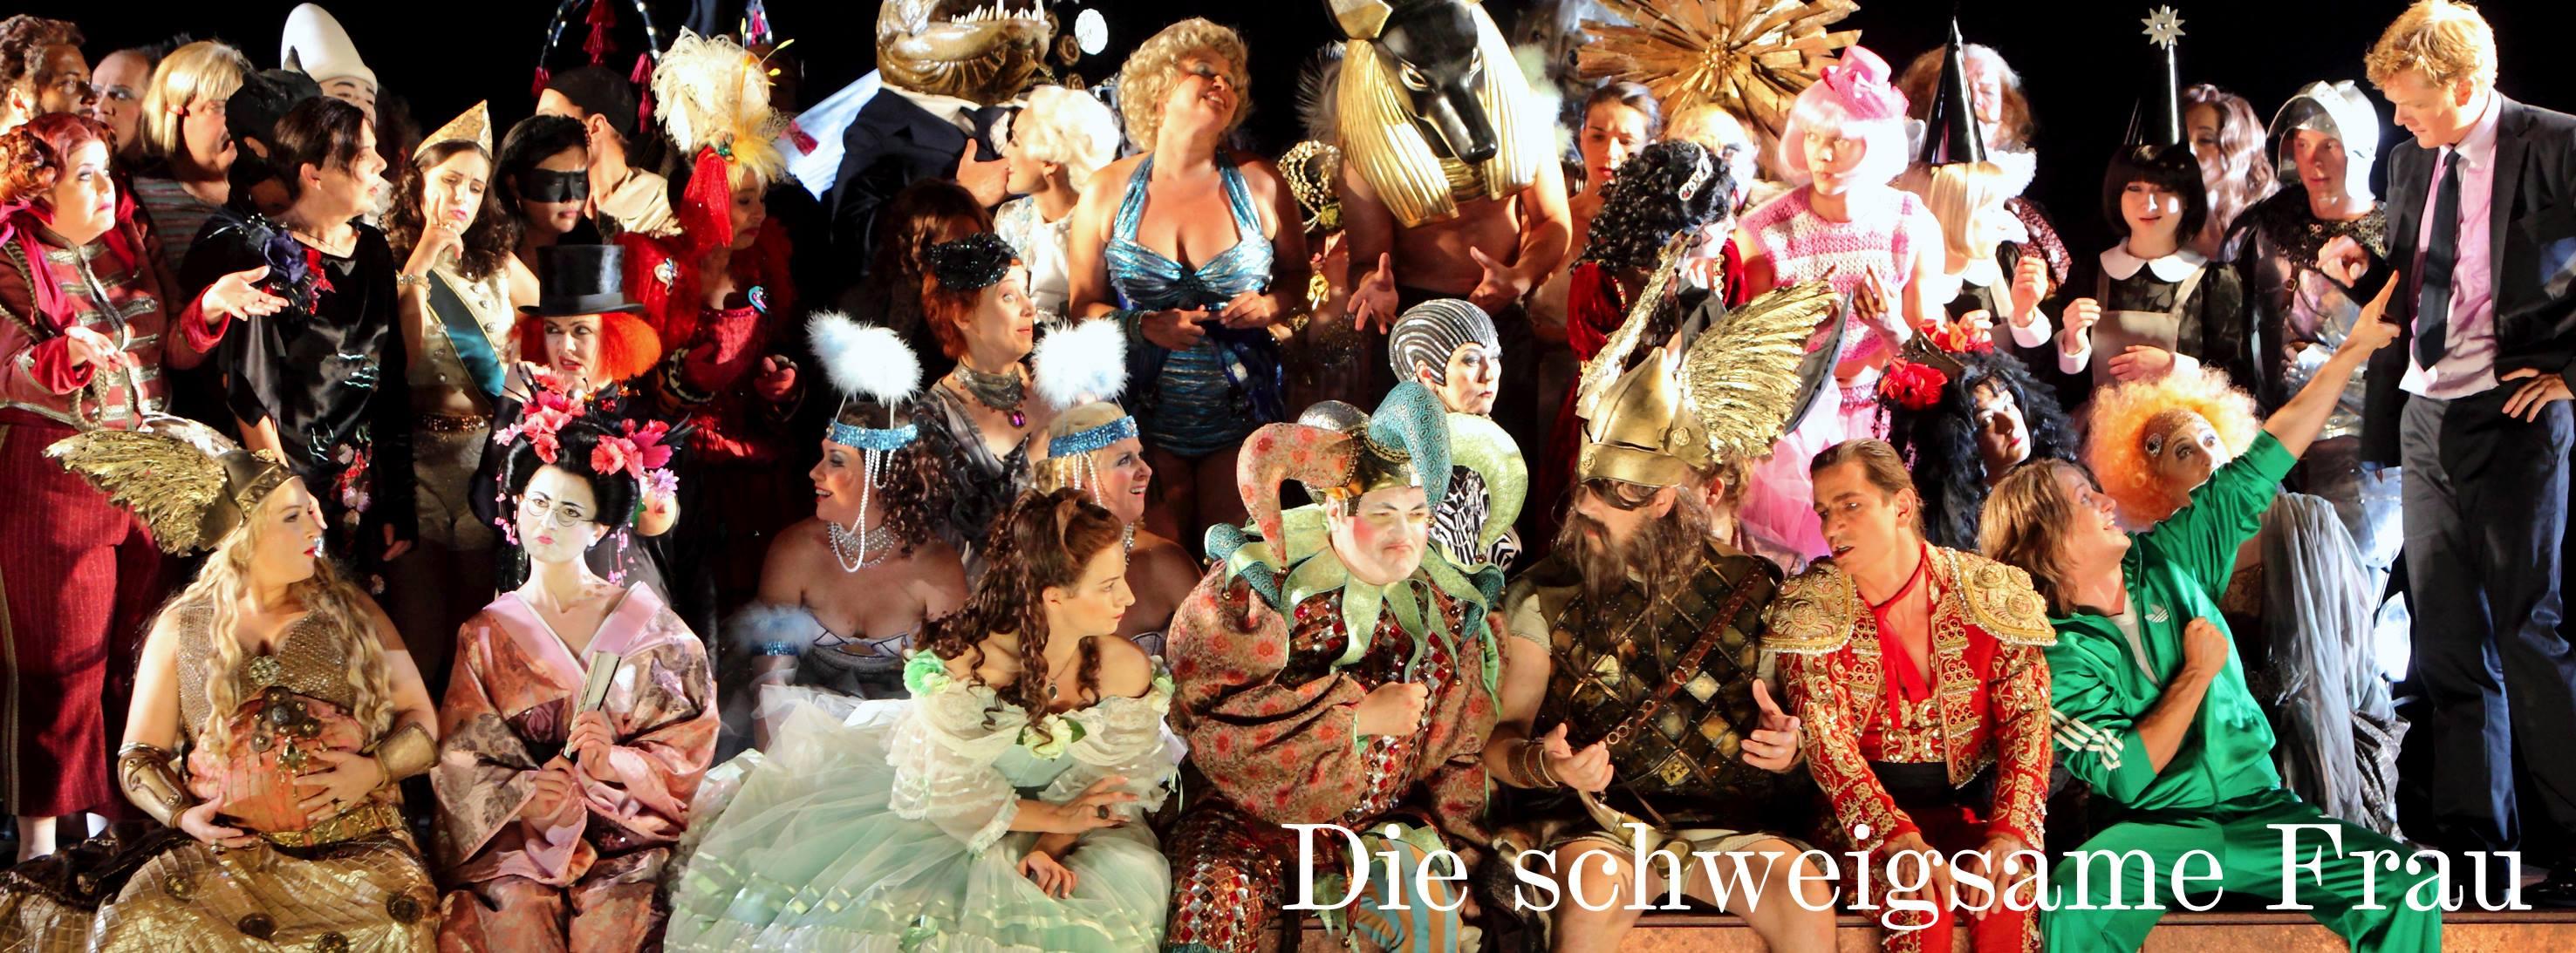 Année Strauss: le Bayerische Staatsoper reprend La Femme silencieuse dans la mise en scène de Barrie Kosky